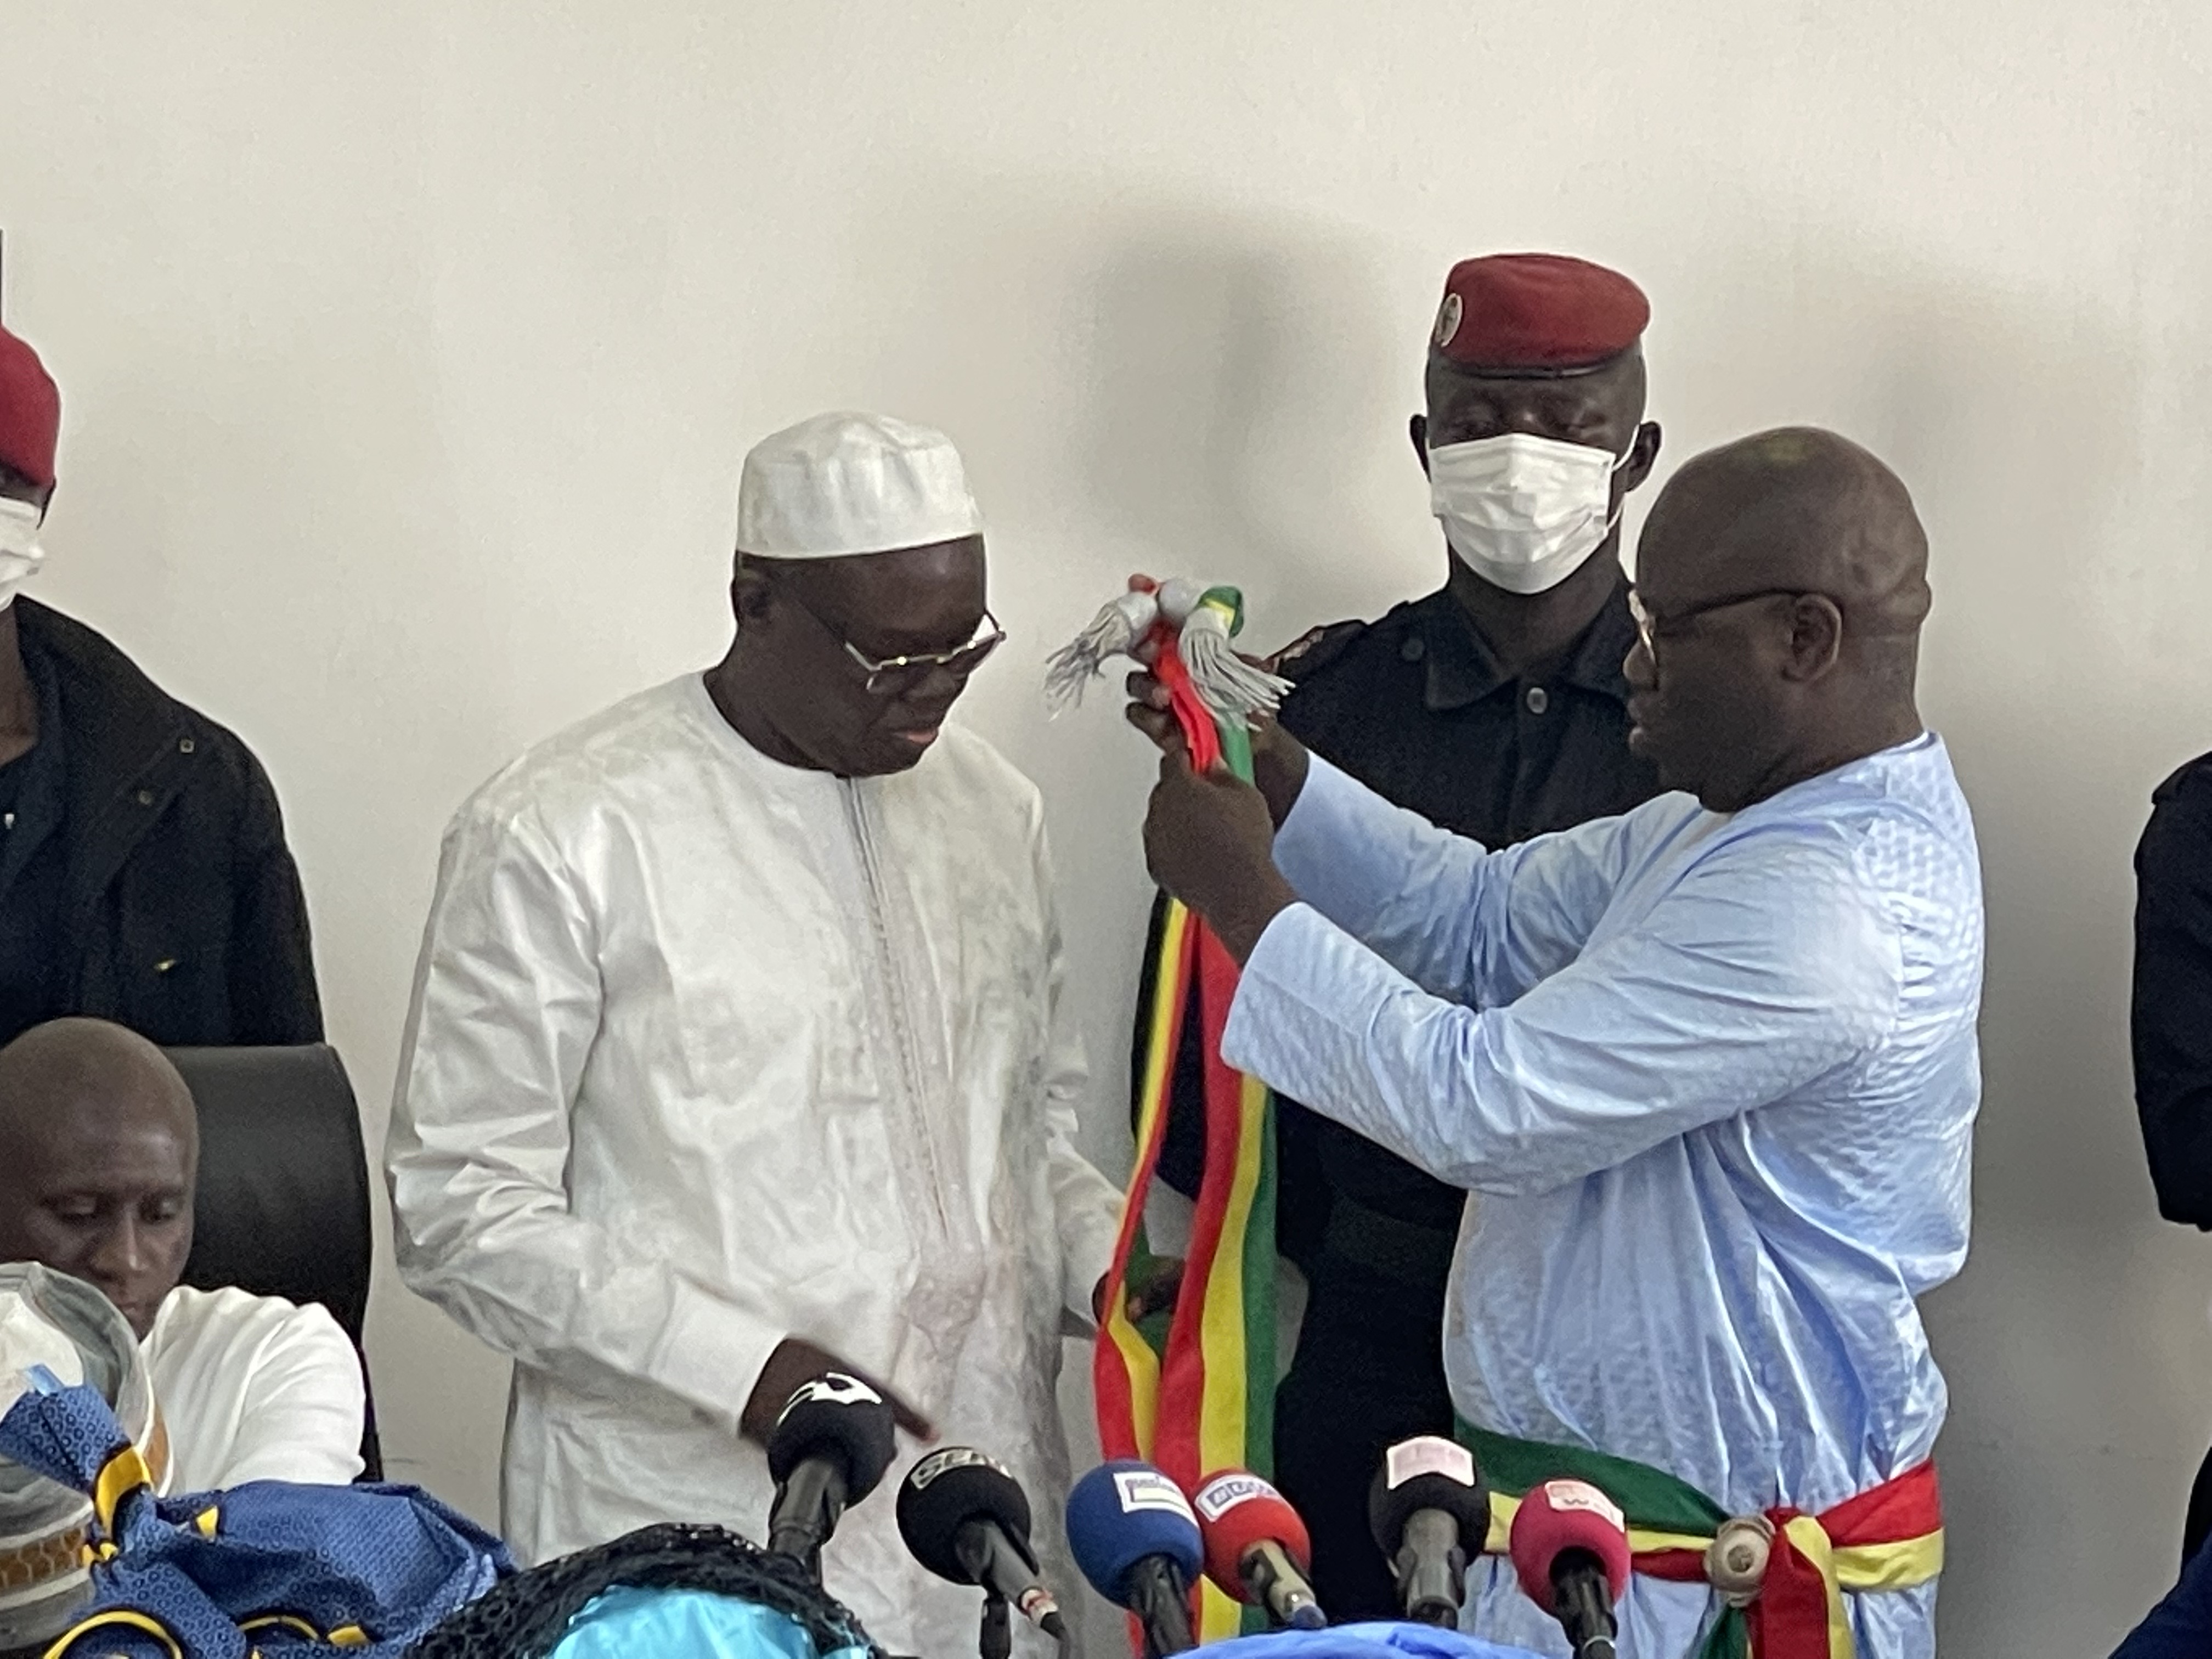 Ville de Guédiawaye : Cheikh Sarr de BBY élu Premier Adjoint au maire